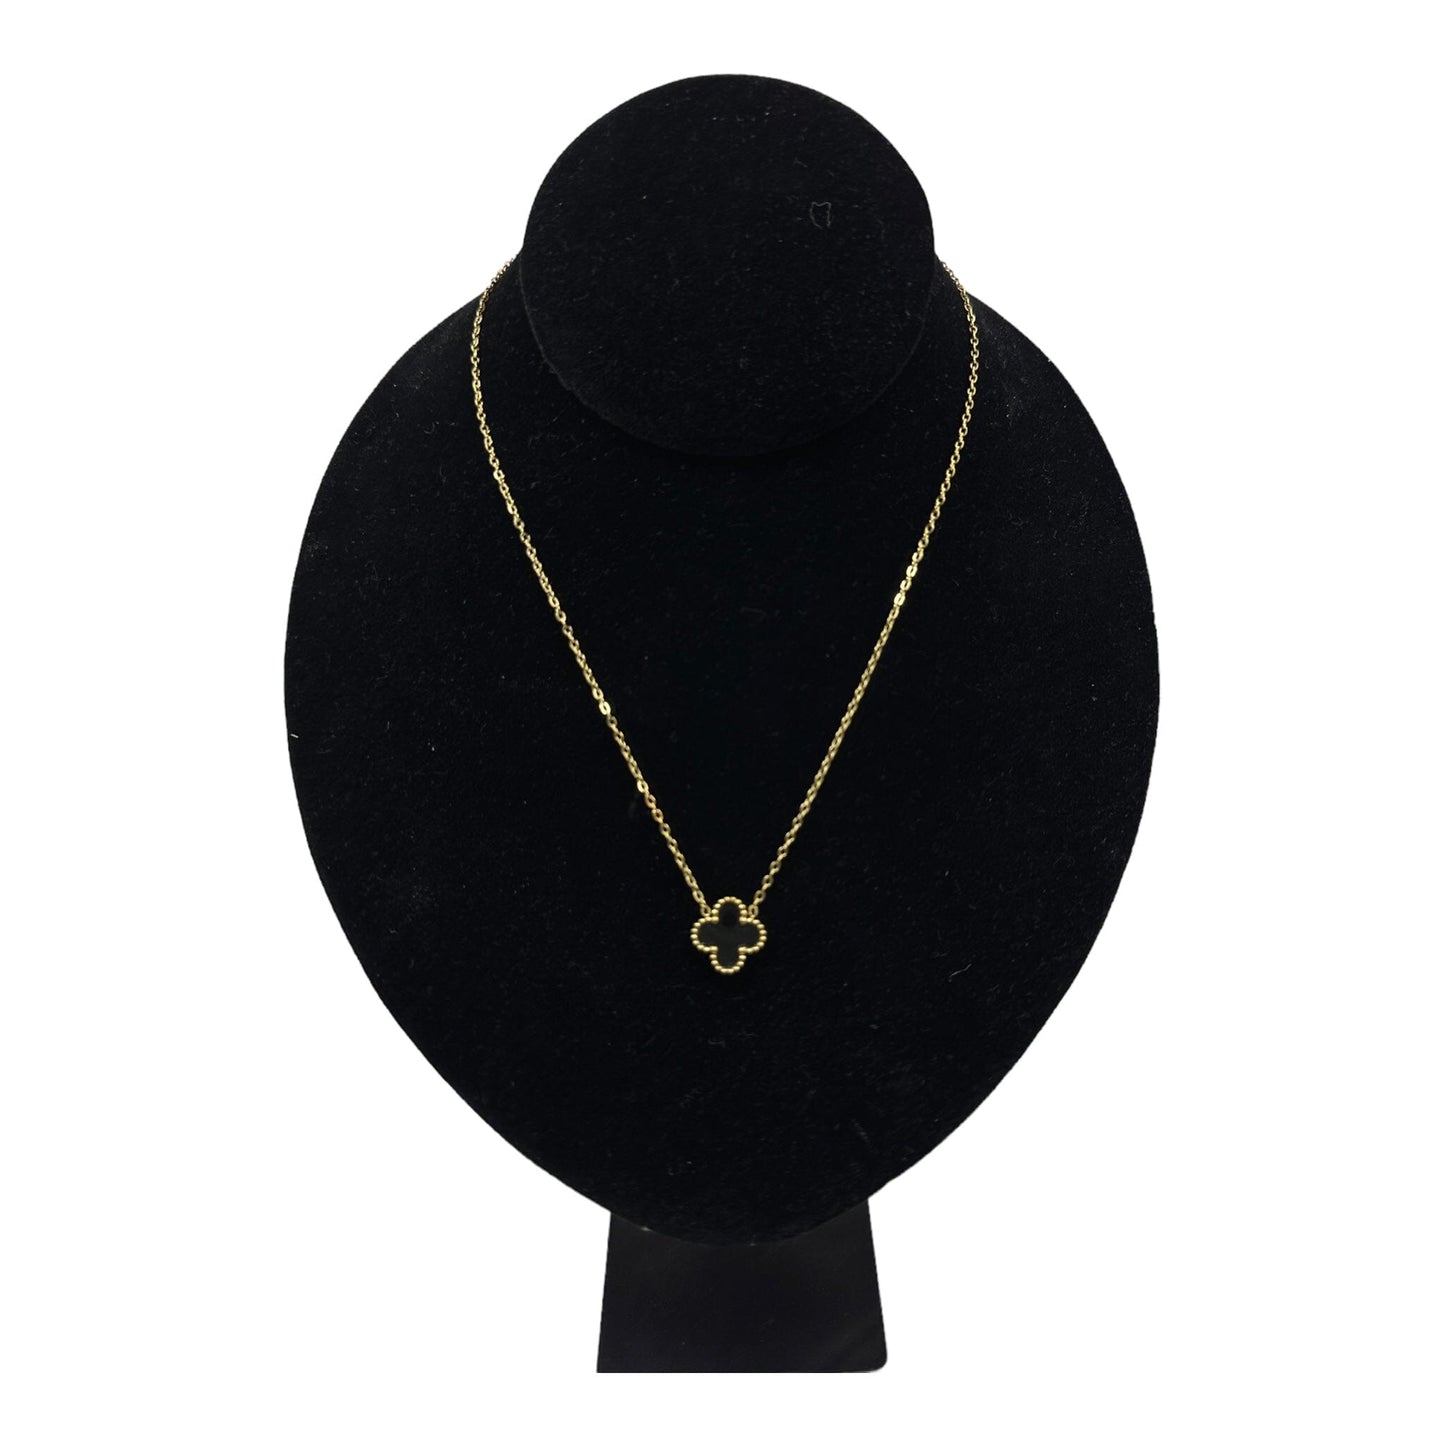 Kaitlin Clover Black Onyx Gold Necklace necklace Trendzio Jewelry 